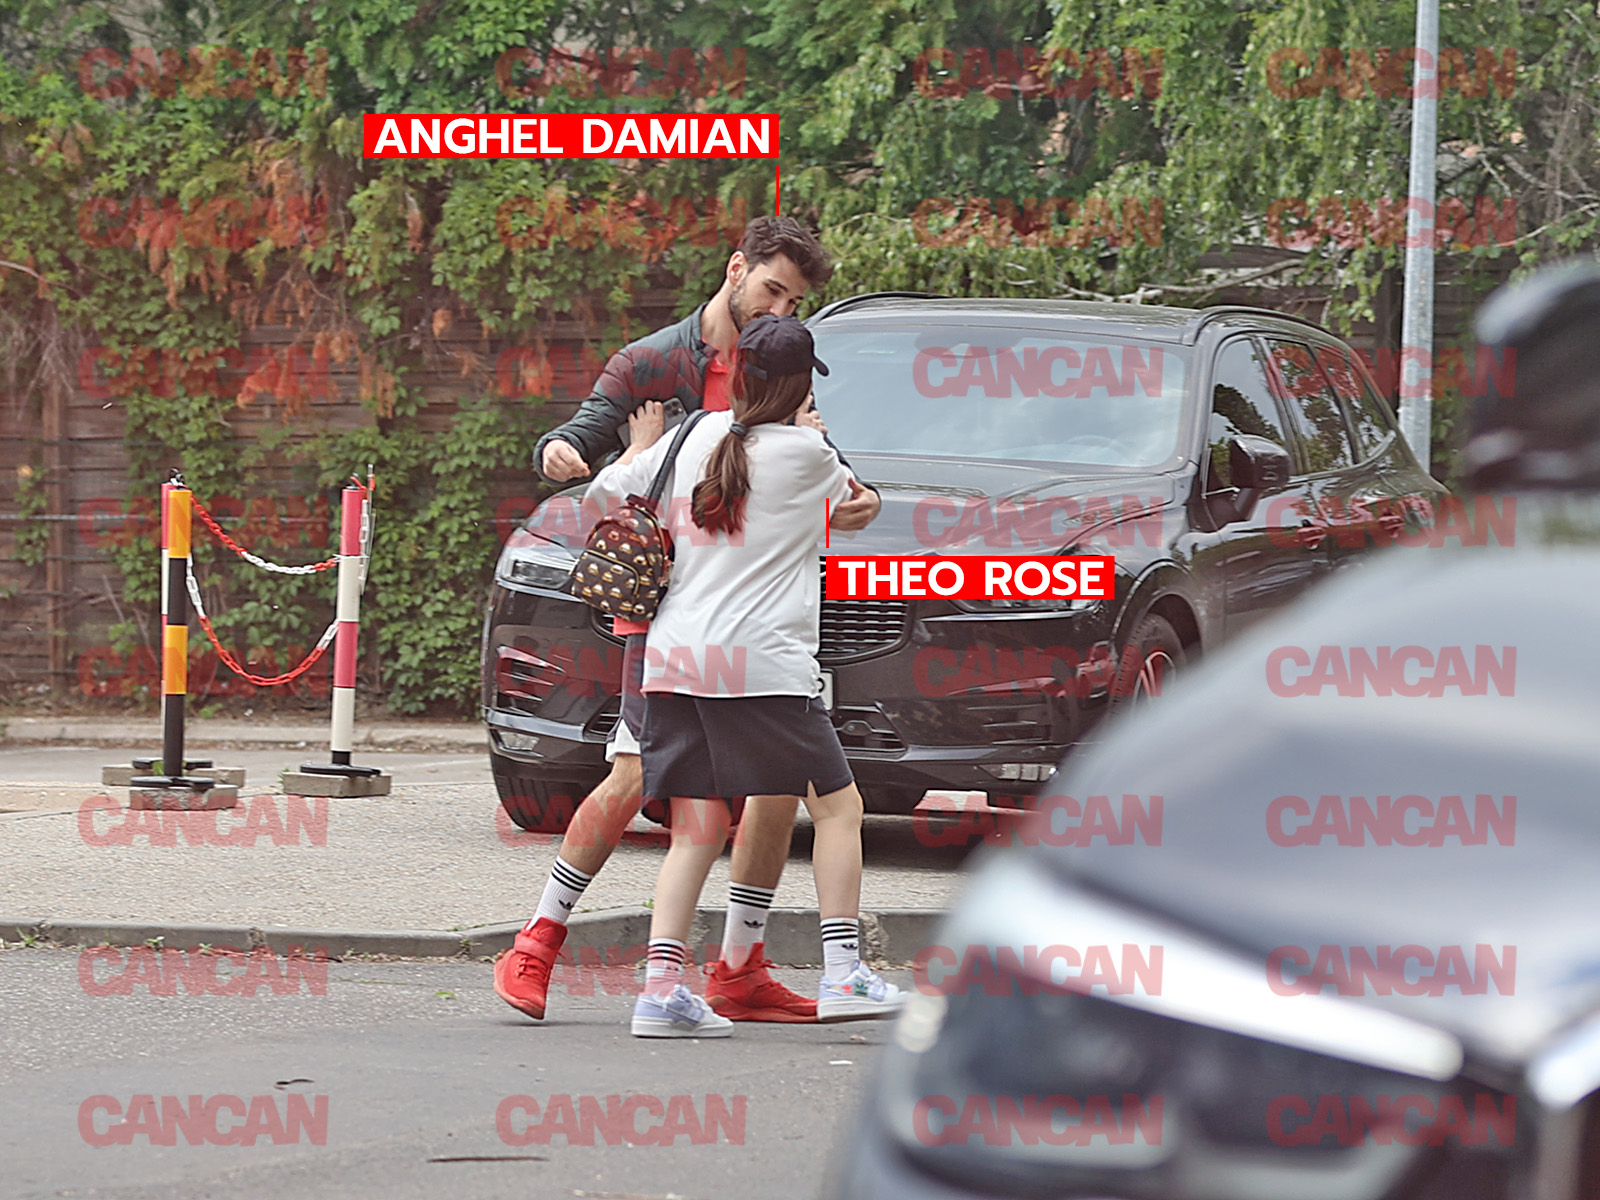 Anghel Damian încearcă să o ia în brațe pe Theo Rose, însă artista îl respinge